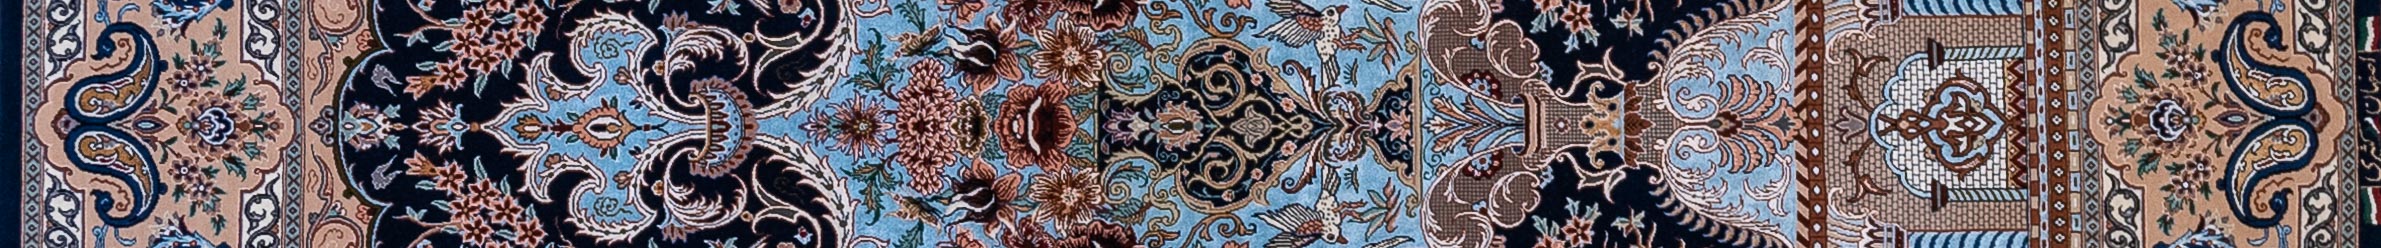 Isfahan Persian Carpet Rug N1Carpet Canada Montreal Tapis Persan 8500